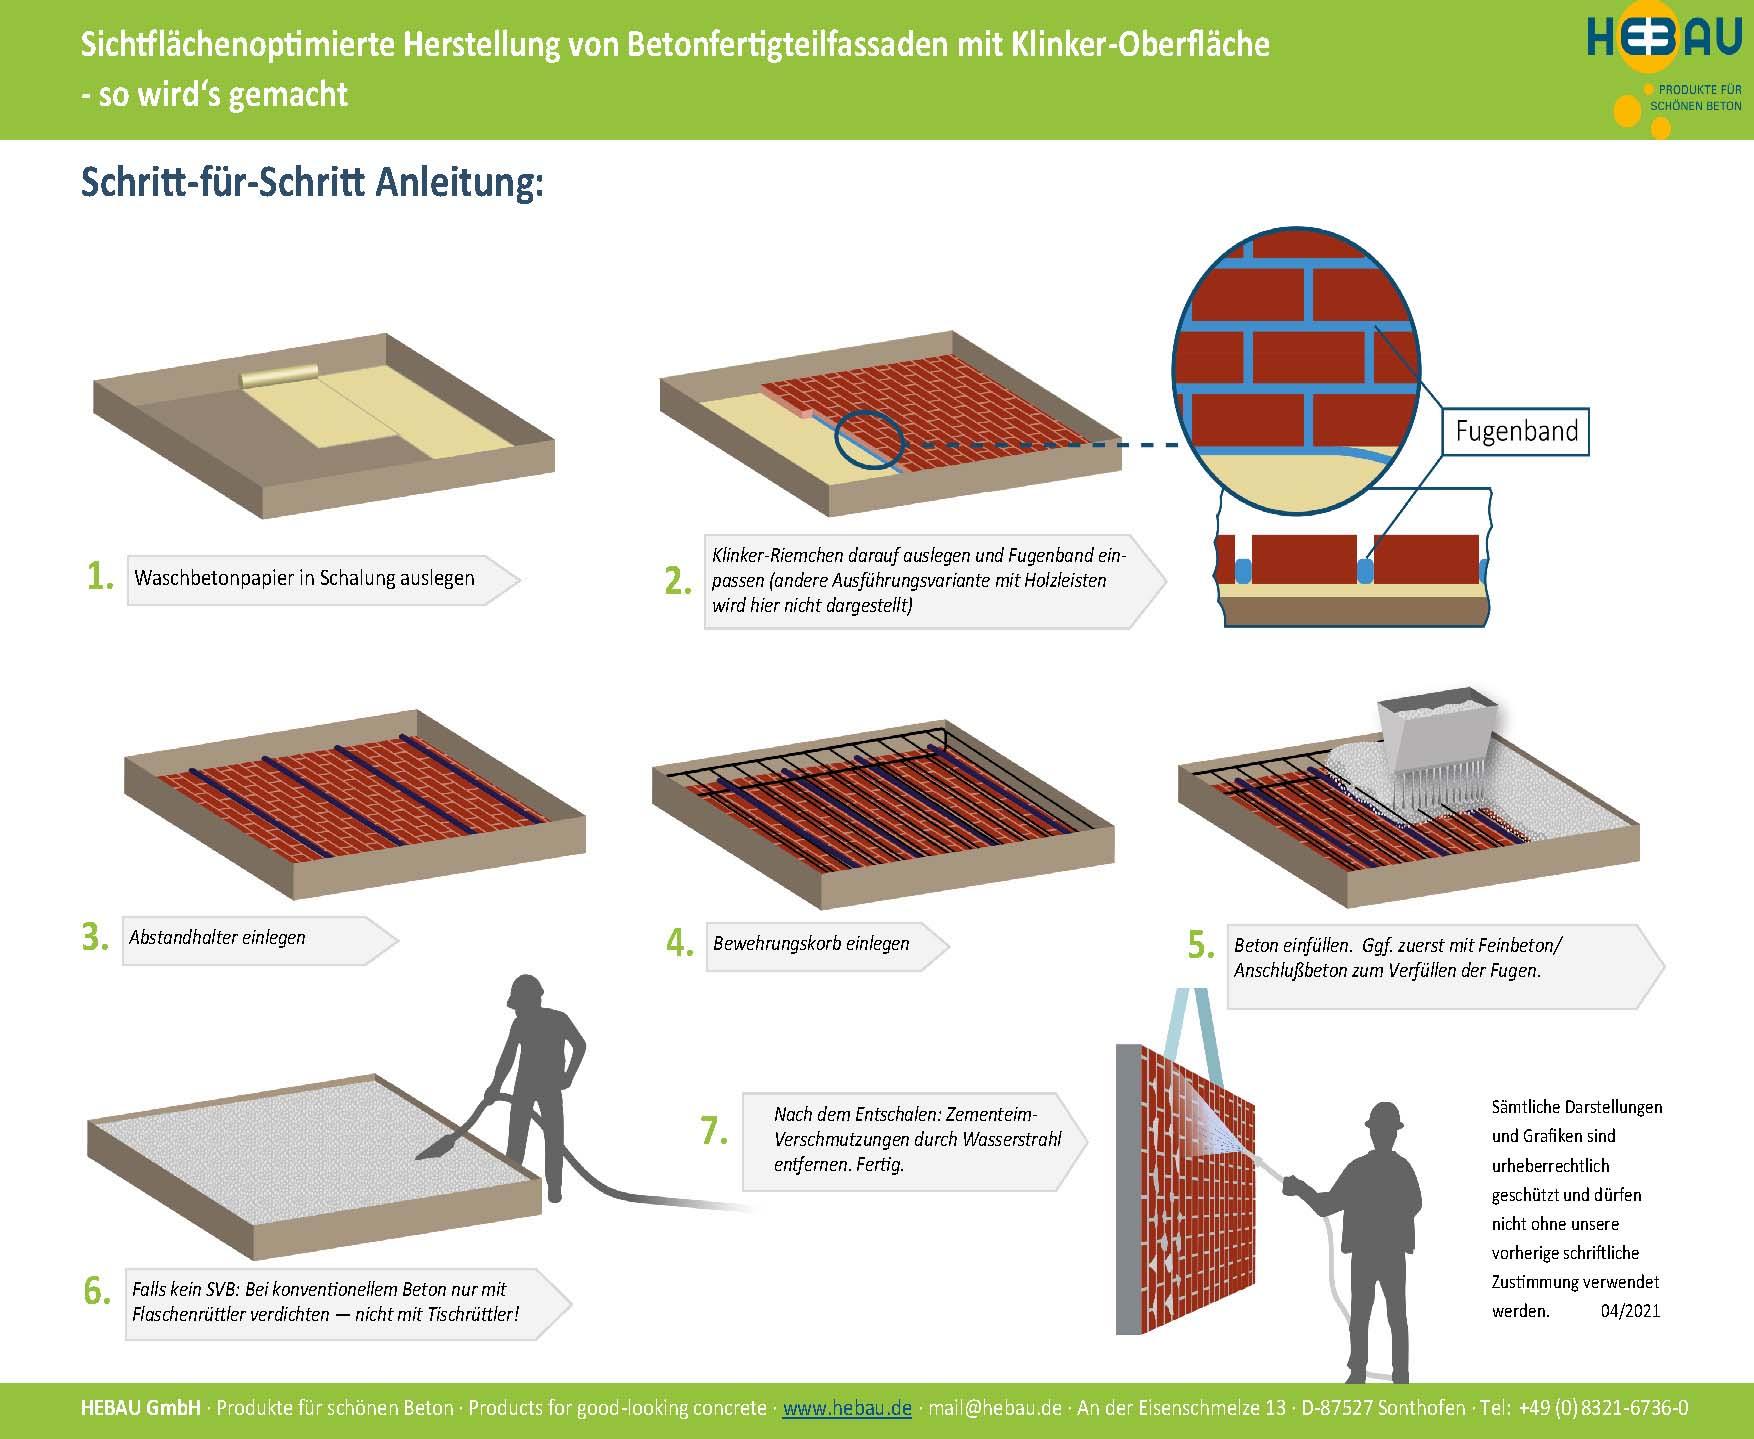 Schritt-für-Schritt-Anleitung: Sichtflächenoptimierte Hertellung von Betonfertigteilfassaden mit Klinker-Oberfläche